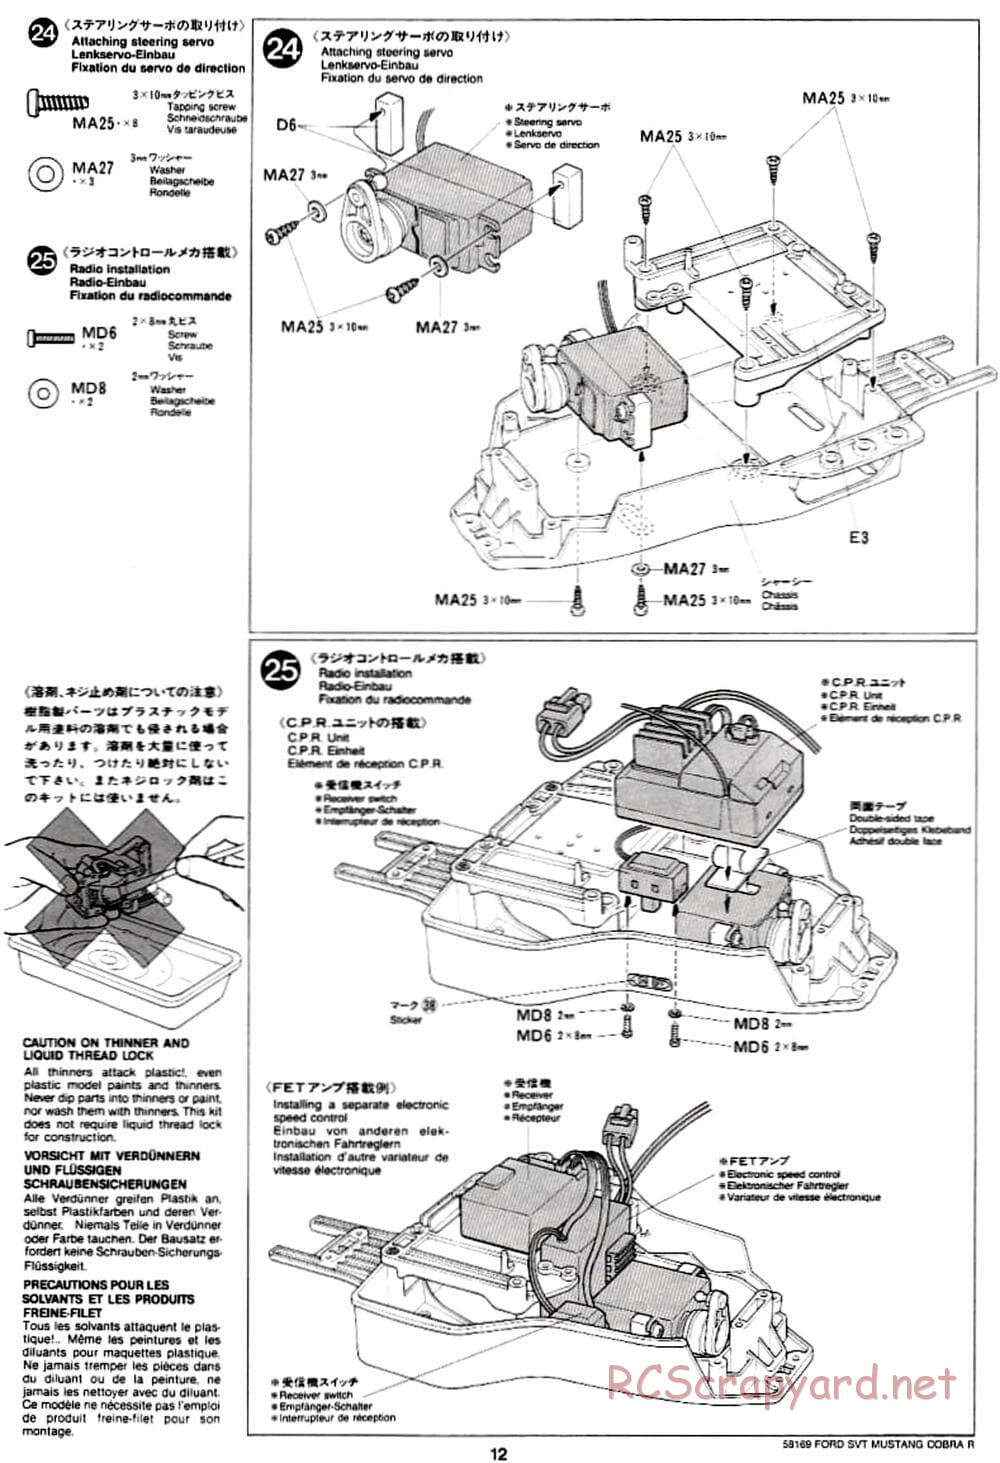 Tamiya - Ford SVT Mustang Cobra-R - TA-02 Chassis - Manual - Page 12